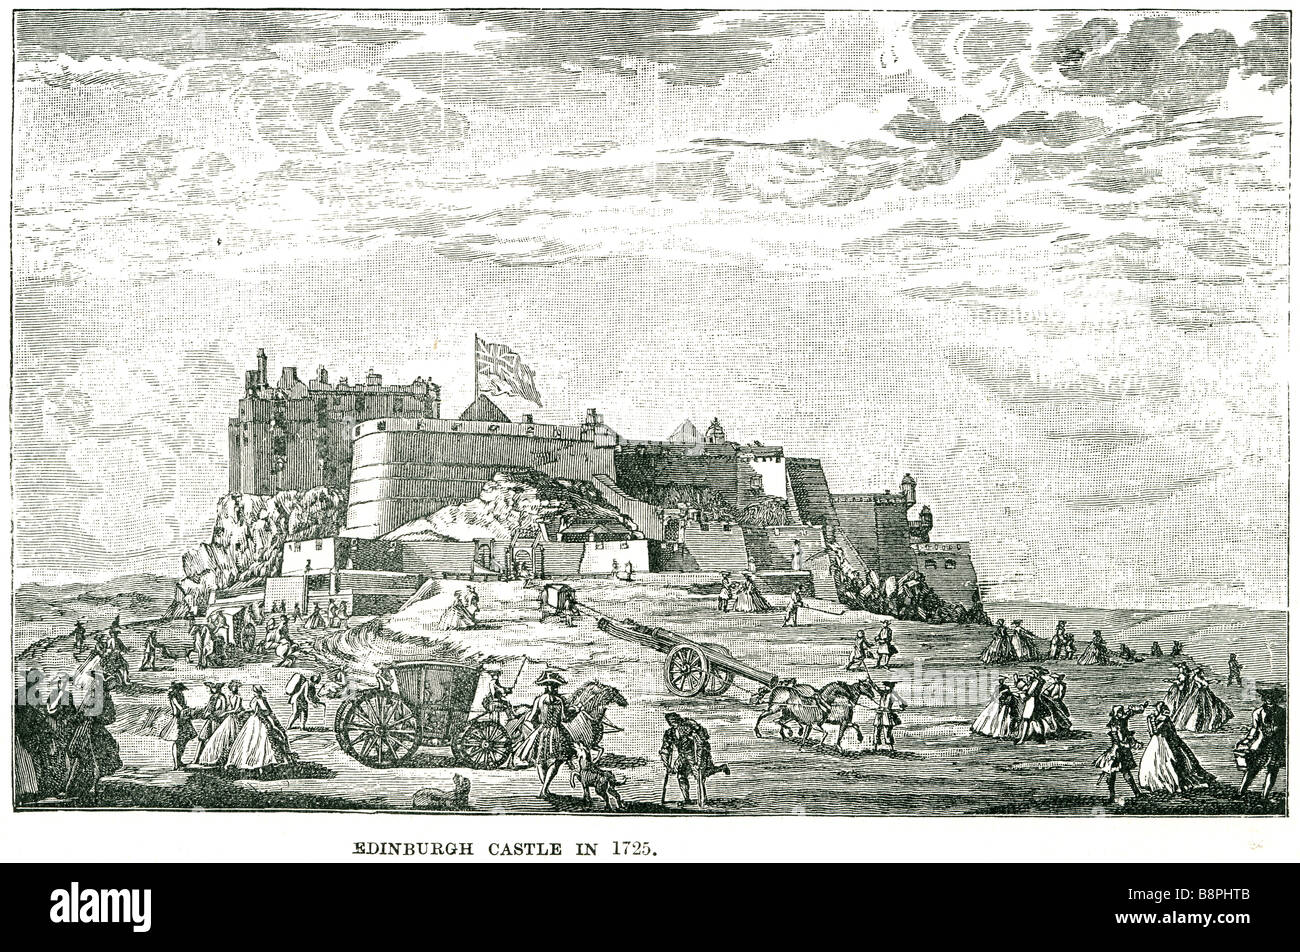 Le château d'Édimbourg en 1725 le château d'Édimbourg est une ancienne forteresse qui domine le ciel de la ville d'Edimbourg à partir de c Banque D'Images